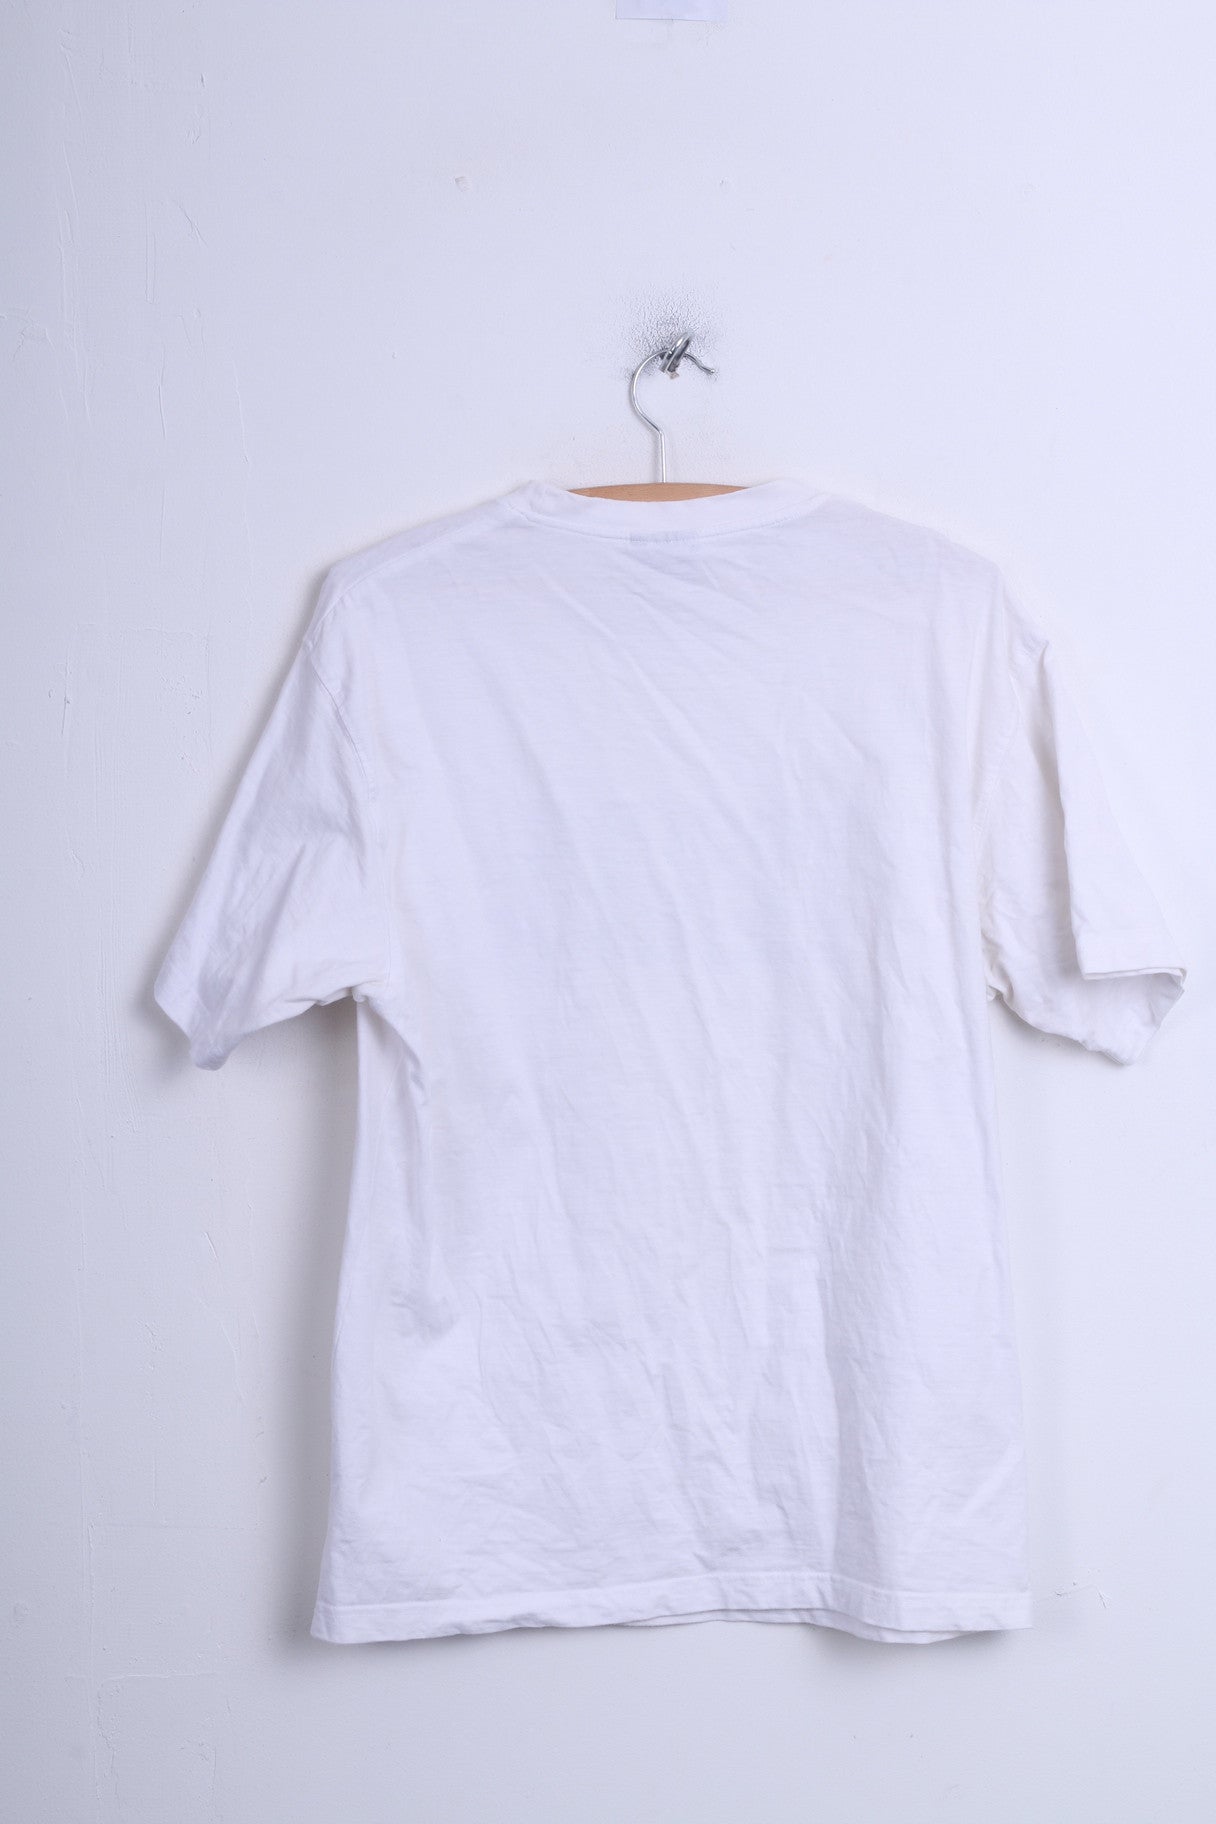 Mens XL T-Shirt White Cotton Crew Neck Football League Championship - RetrospectClothes